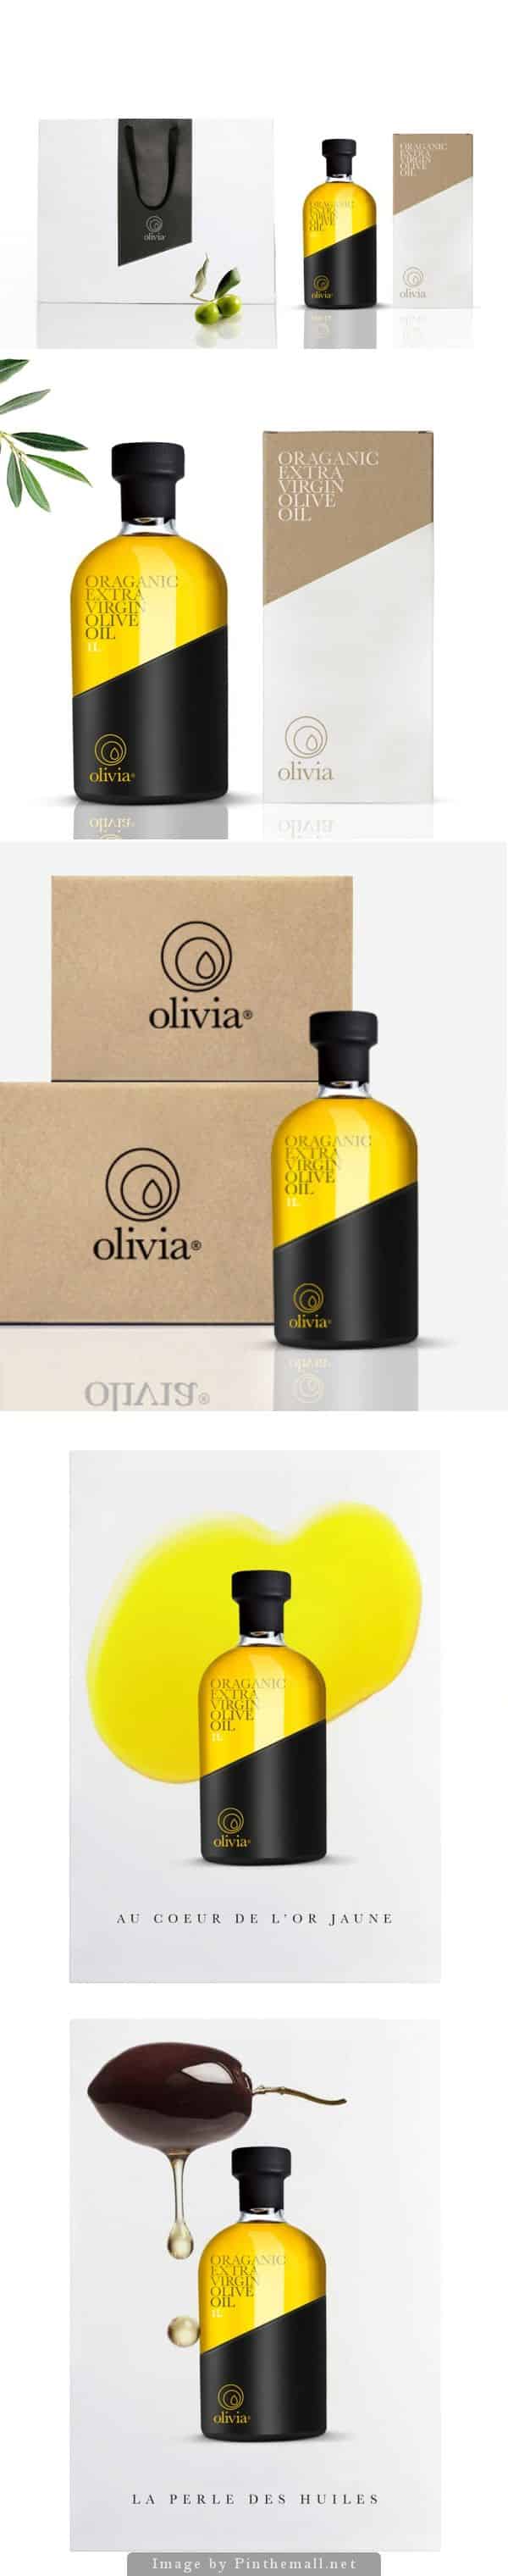 olive_oil_elegant_packaging_design_21